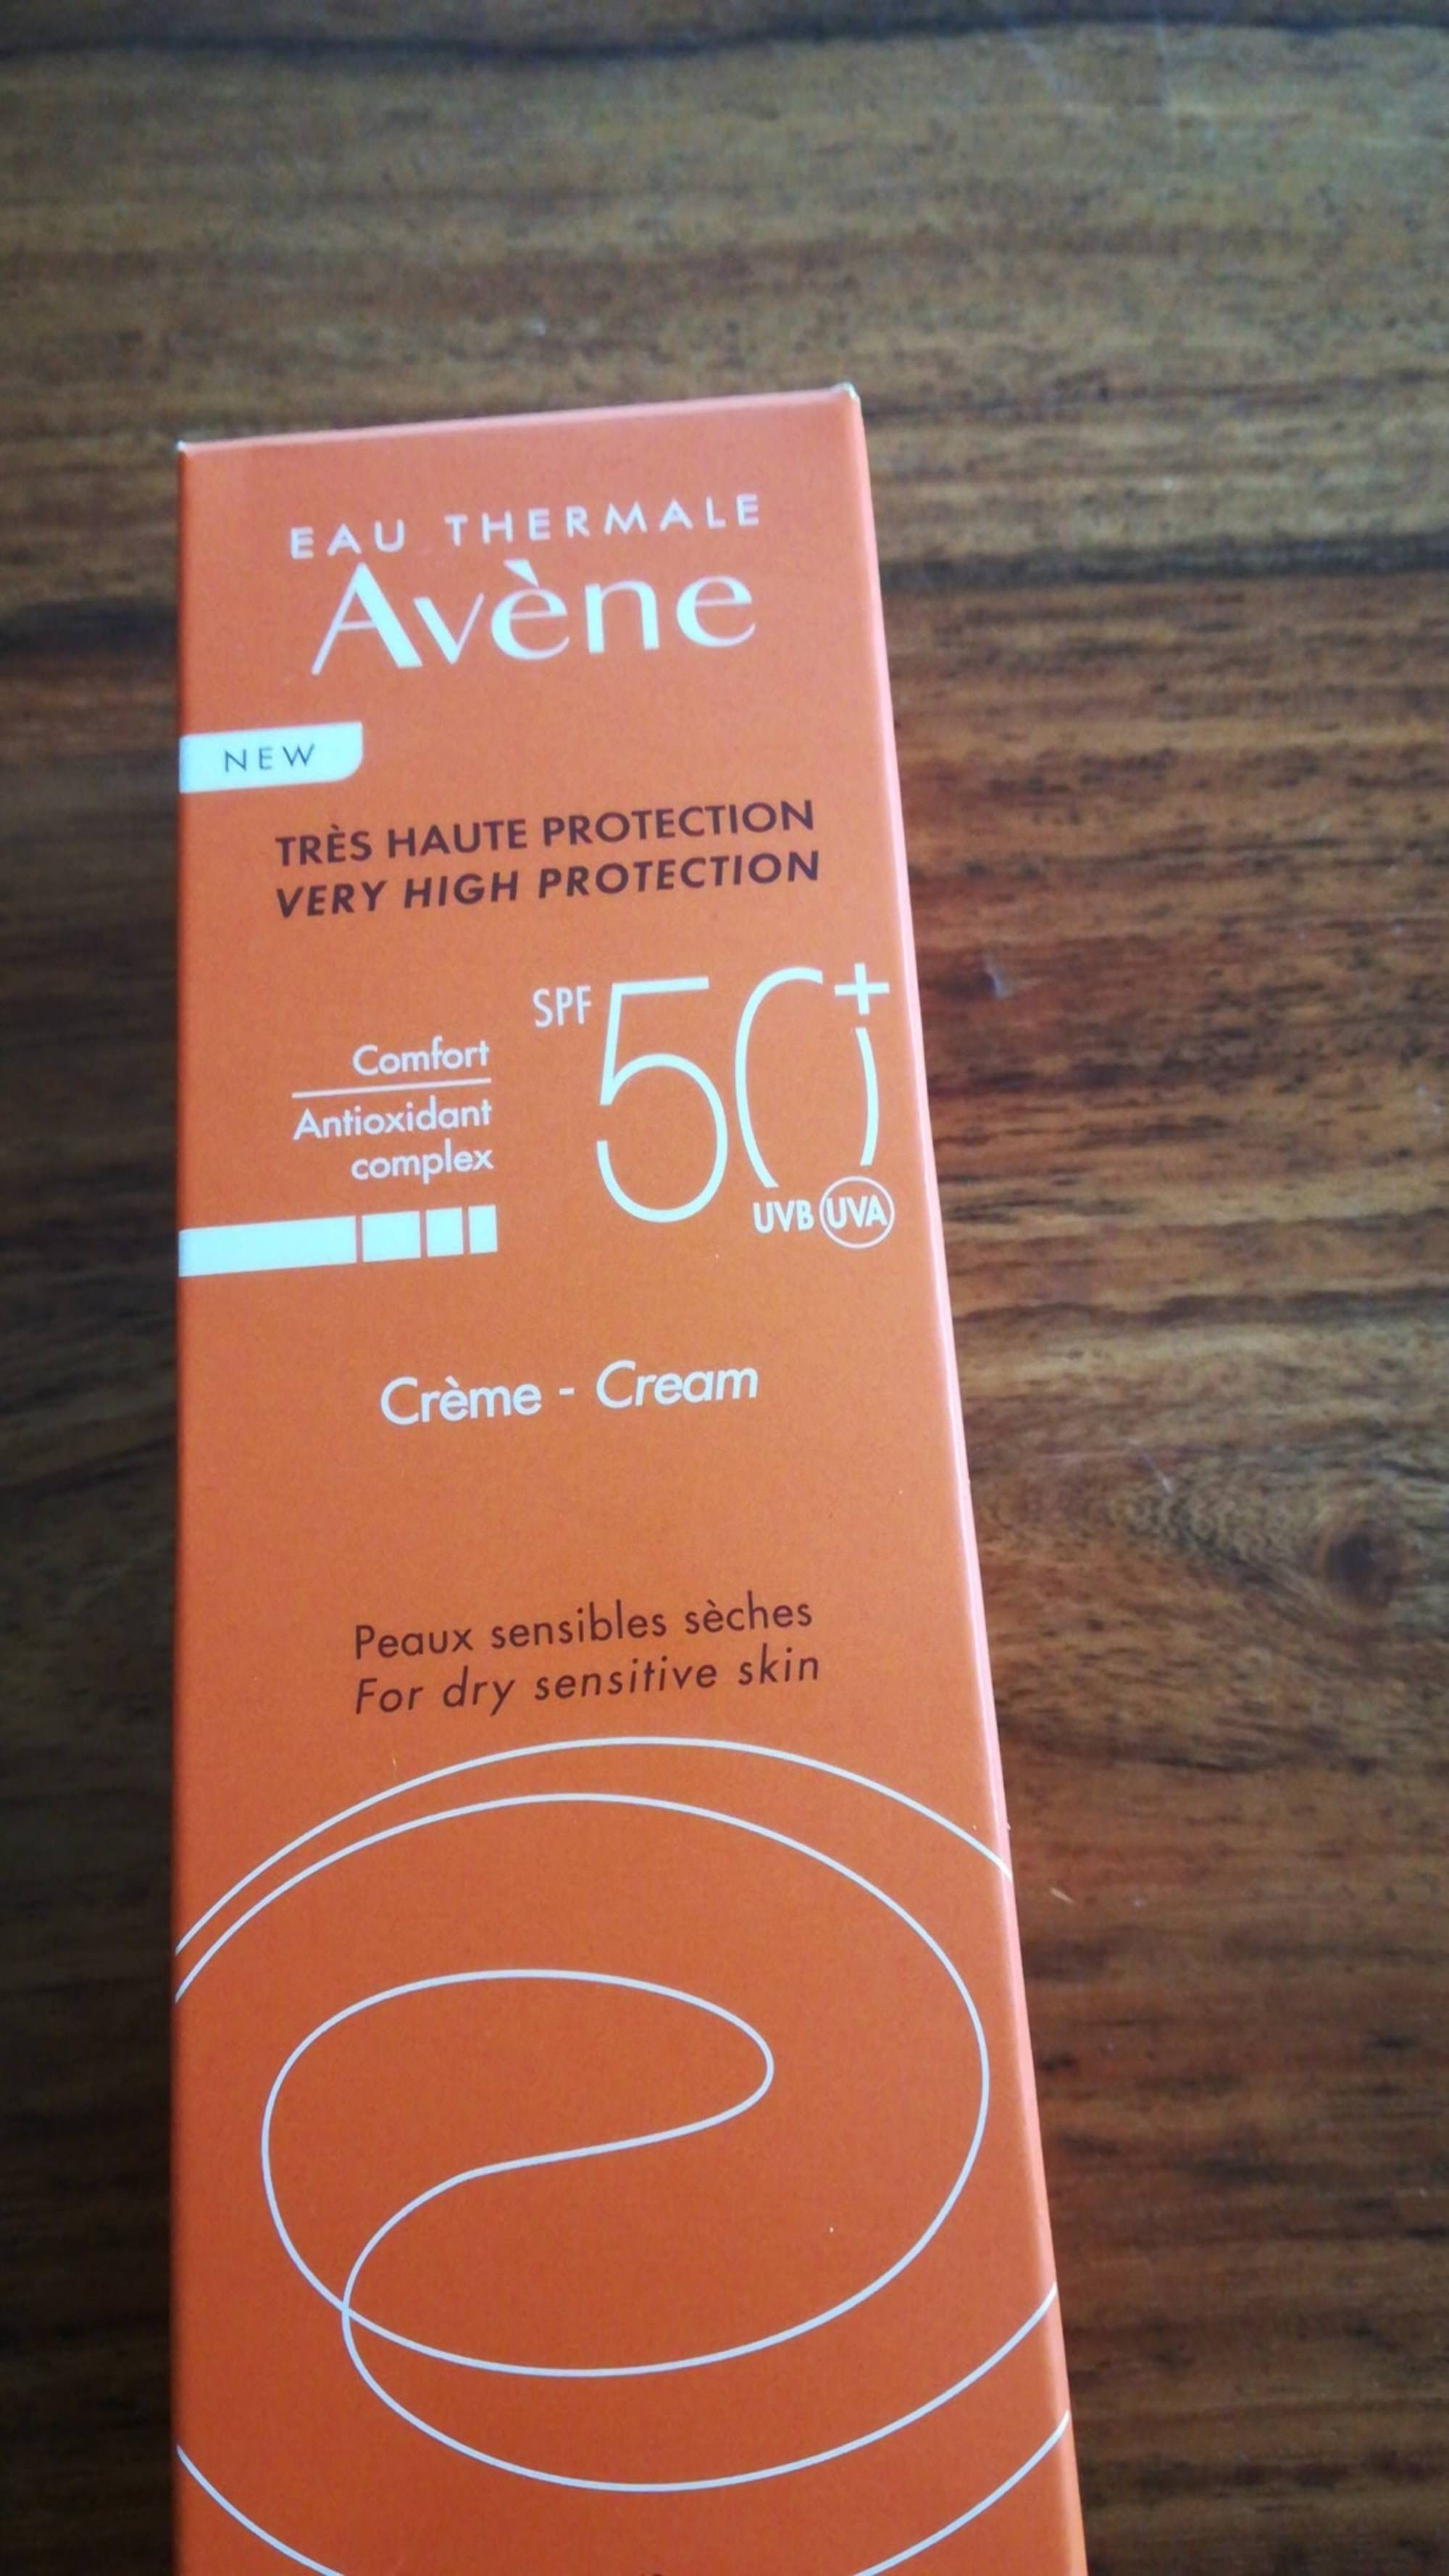 AVÈNE - Eau thermale - Crème très haute protection SPF 50+